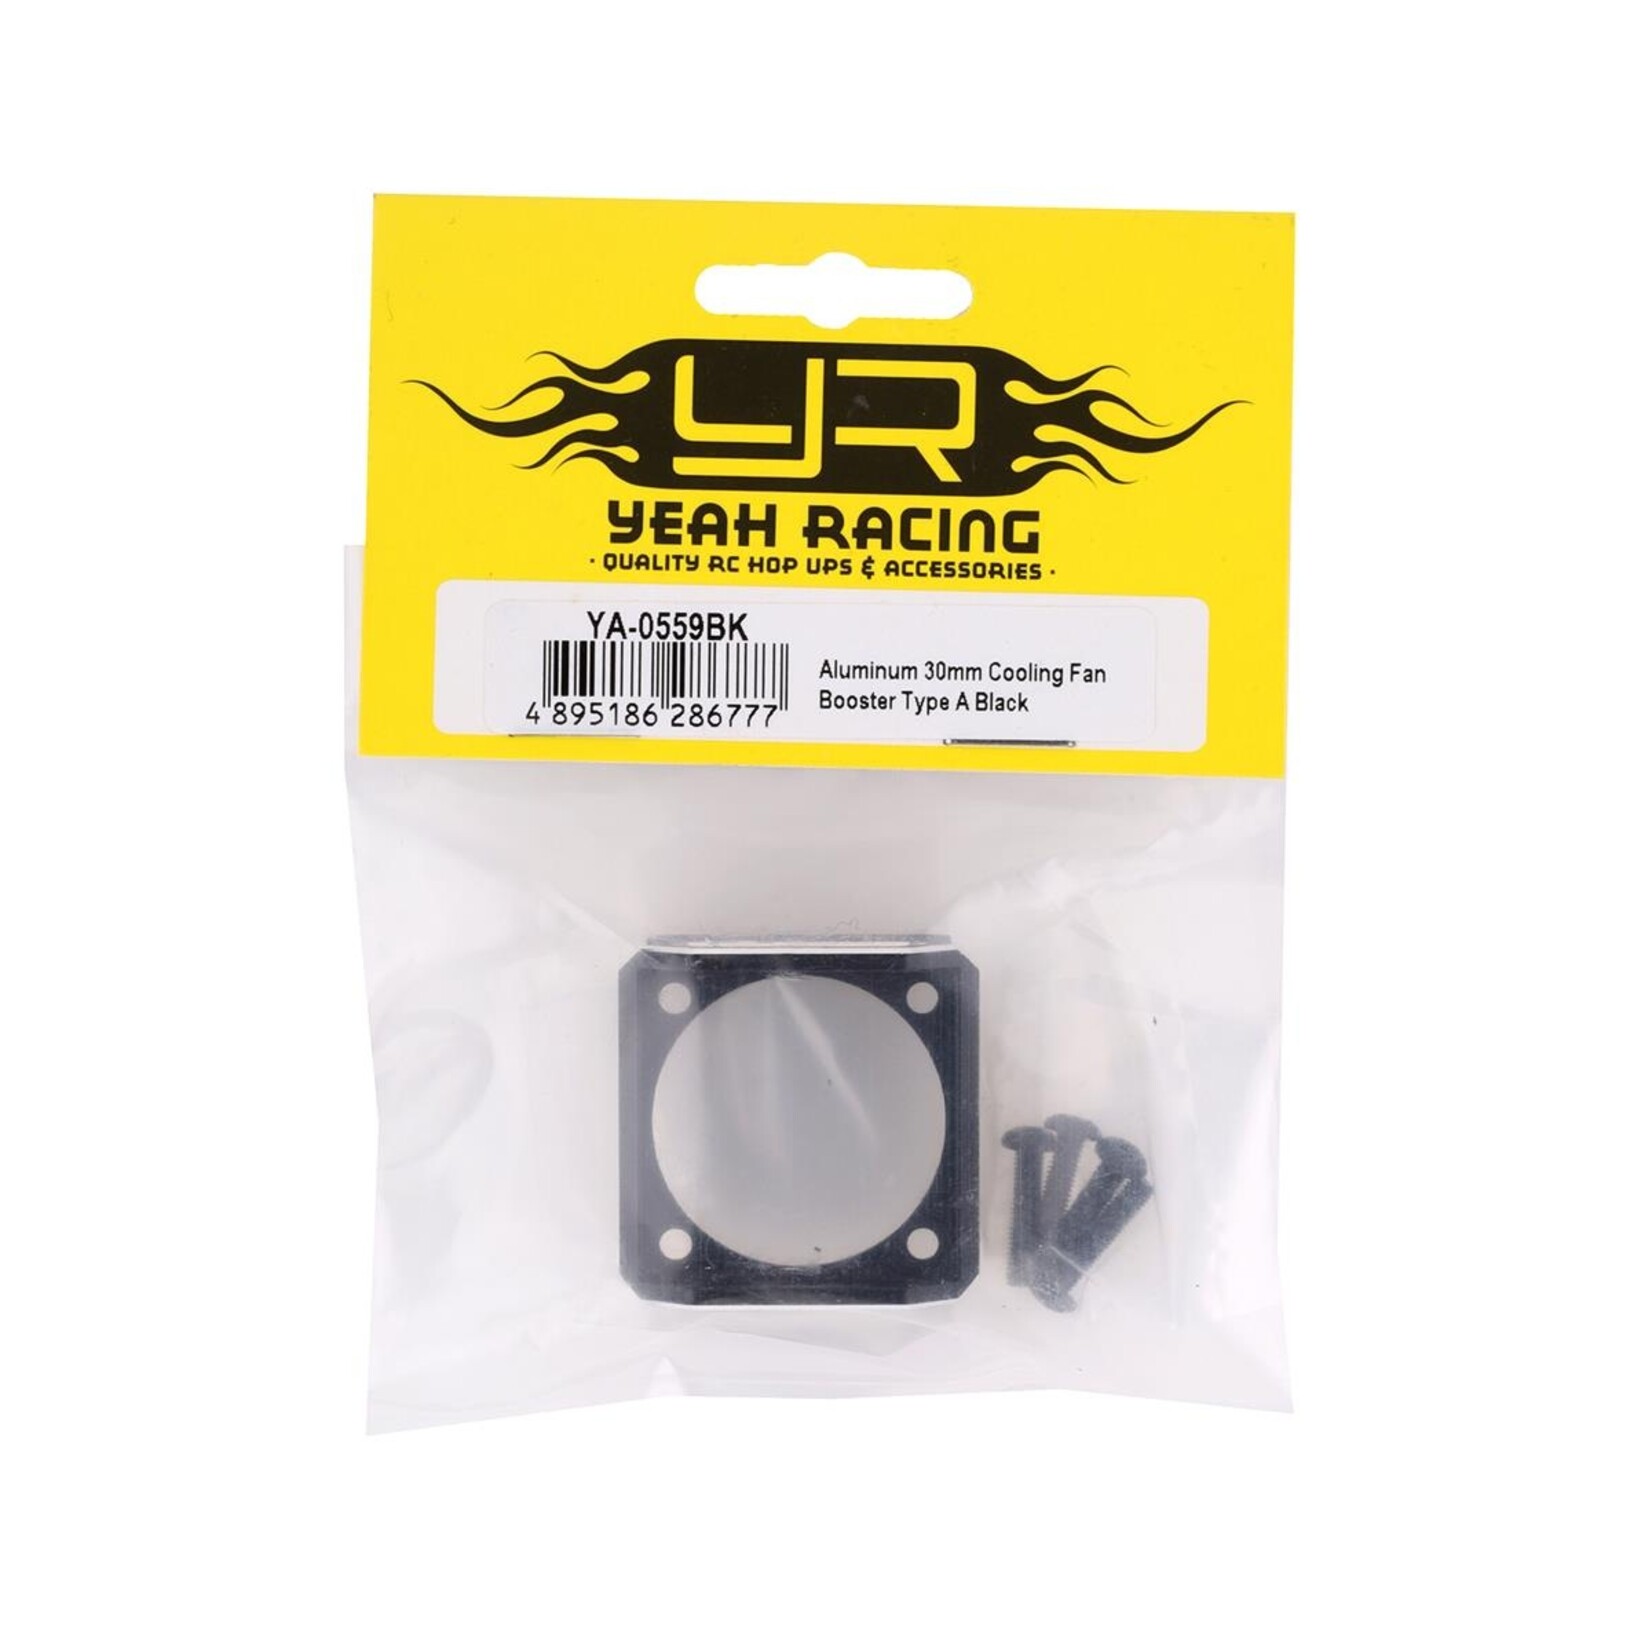 Yeah Racing Yeah Racing 30mm ESC Cooling Fan Booster (Black) #YA-0559BK